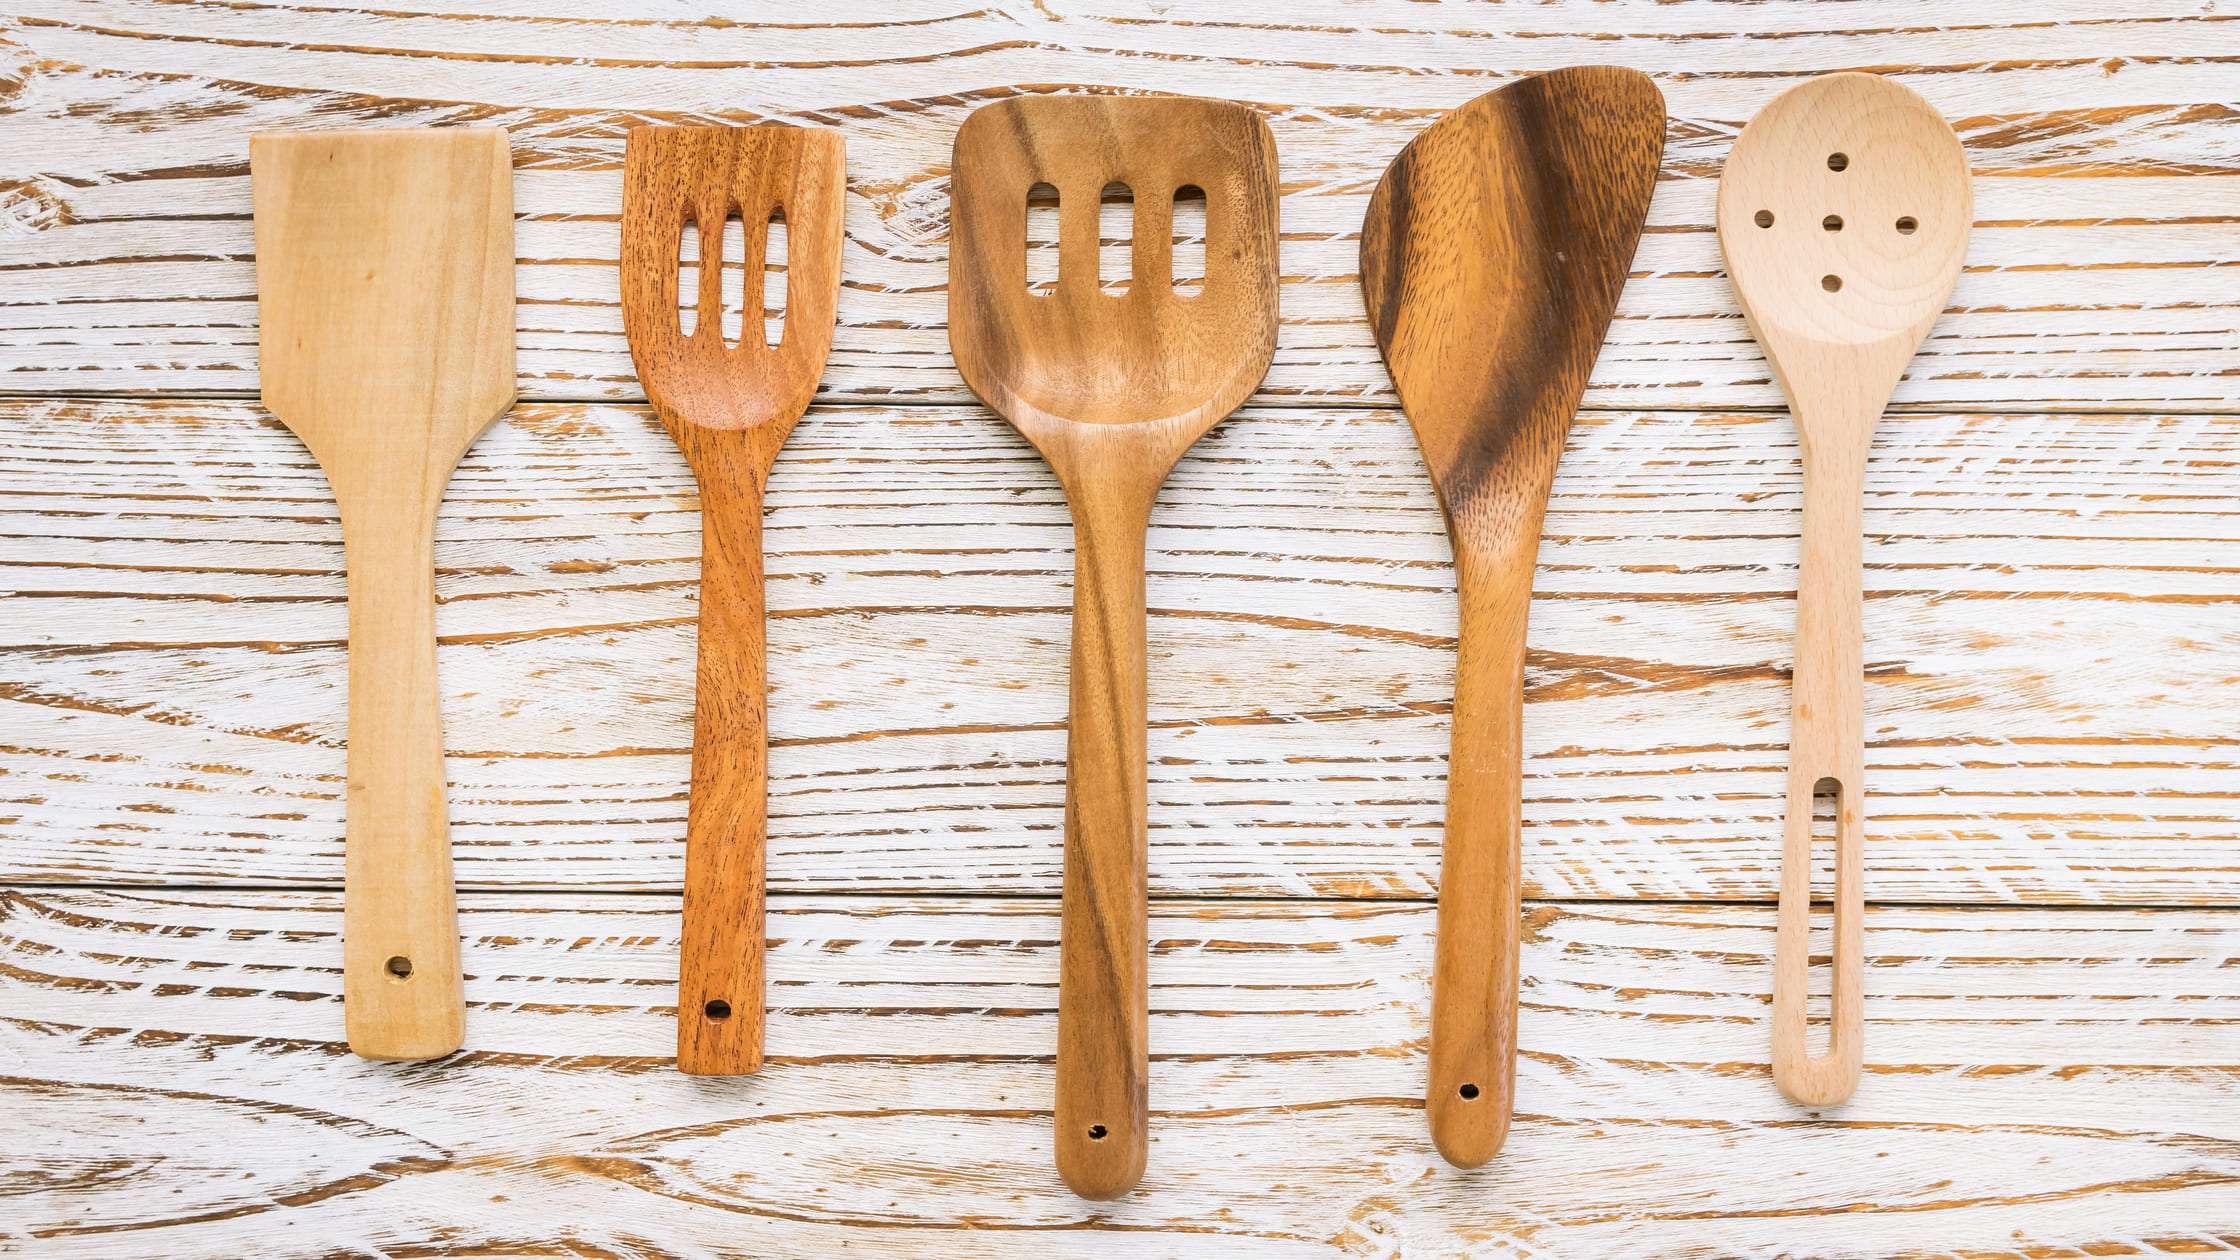  Zulay Kitchen 9-Piece Teak Wooden Utensils for Cooking